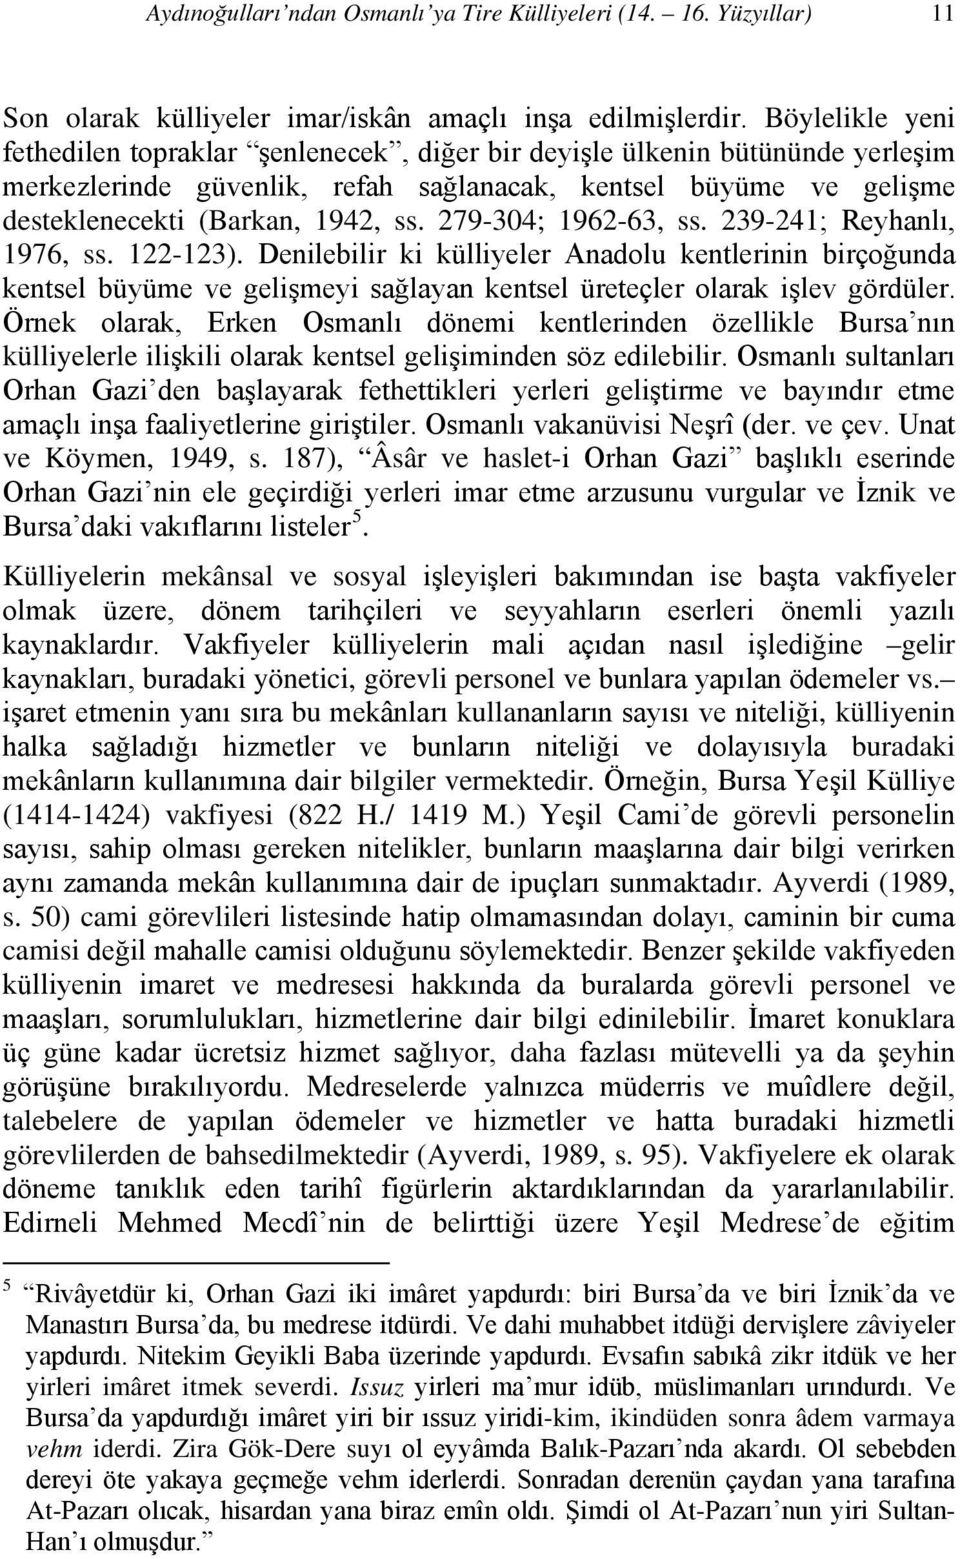 279-304; 1962-63, ss. 239-241; Reyhanlı, 1976, ss. 122-123). Denilebilir ki külliyeler Anadolu kentlerinin birçoğunda kentsel büyüme ve gelişmeyi sağlayan kentsel üreteçler olarak işlev gördüler.